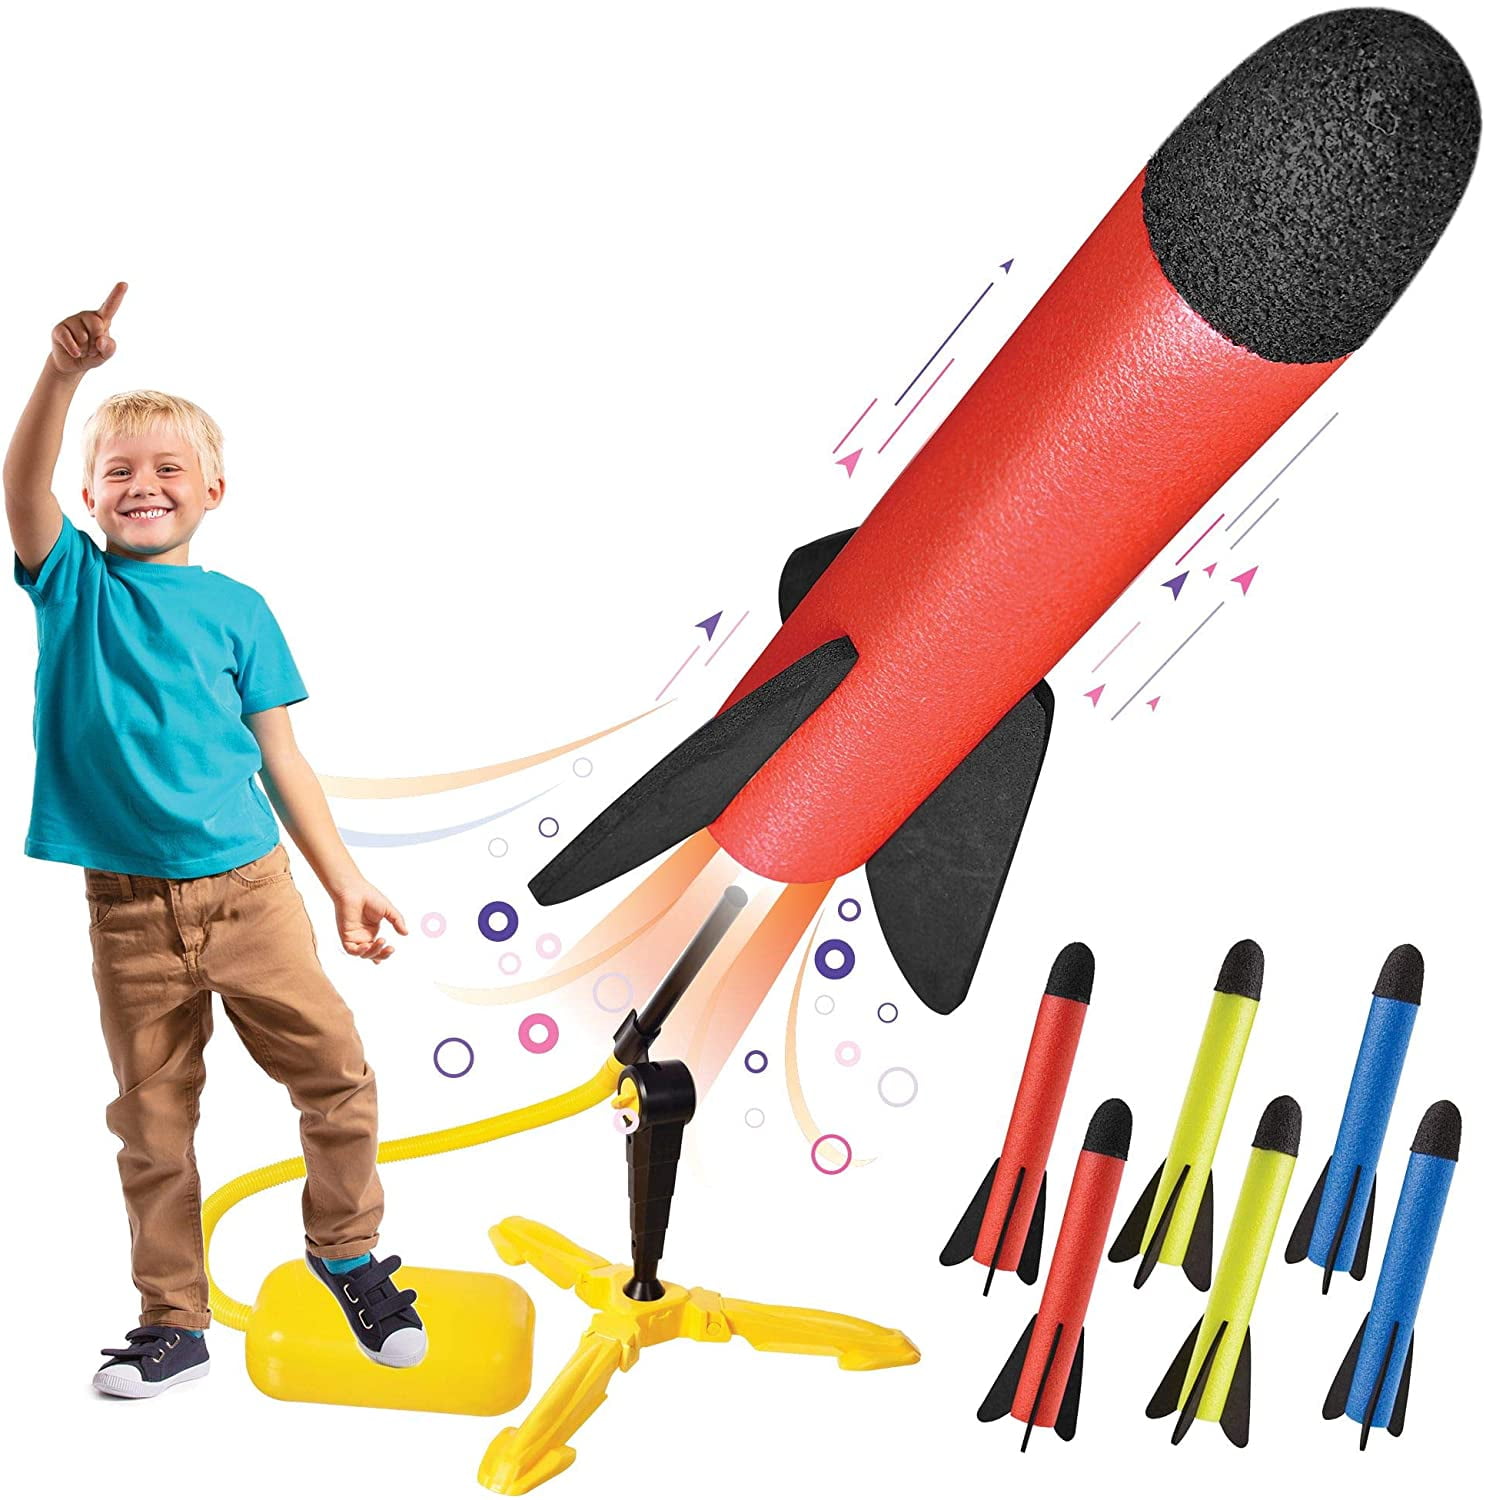 Outdoor Foam Hand Throw Rocket Launcher Outdoor Activity Kids Toy Gift 6 Years 